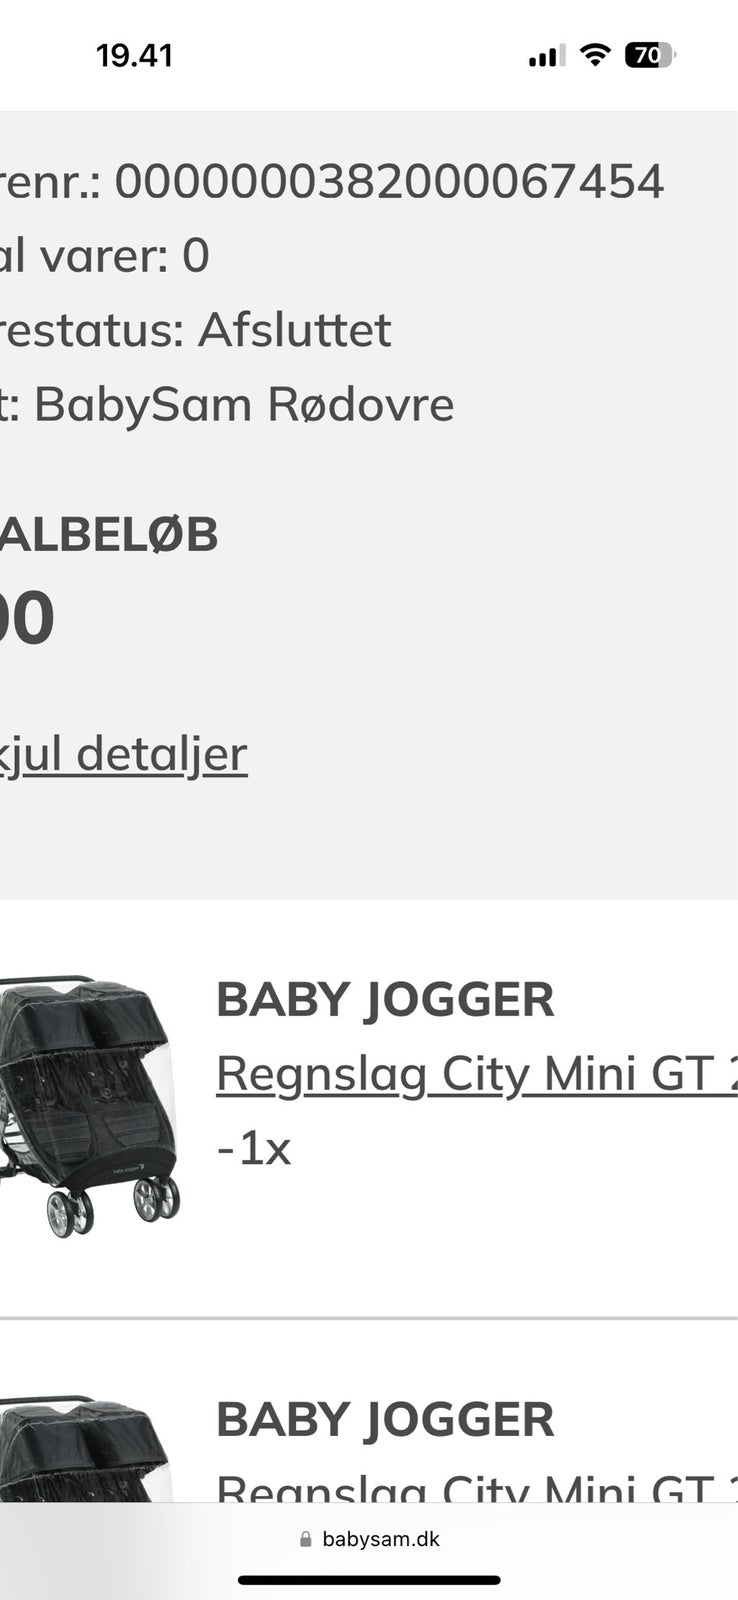 Babyjogger, Baby Jogger, søskendevogn